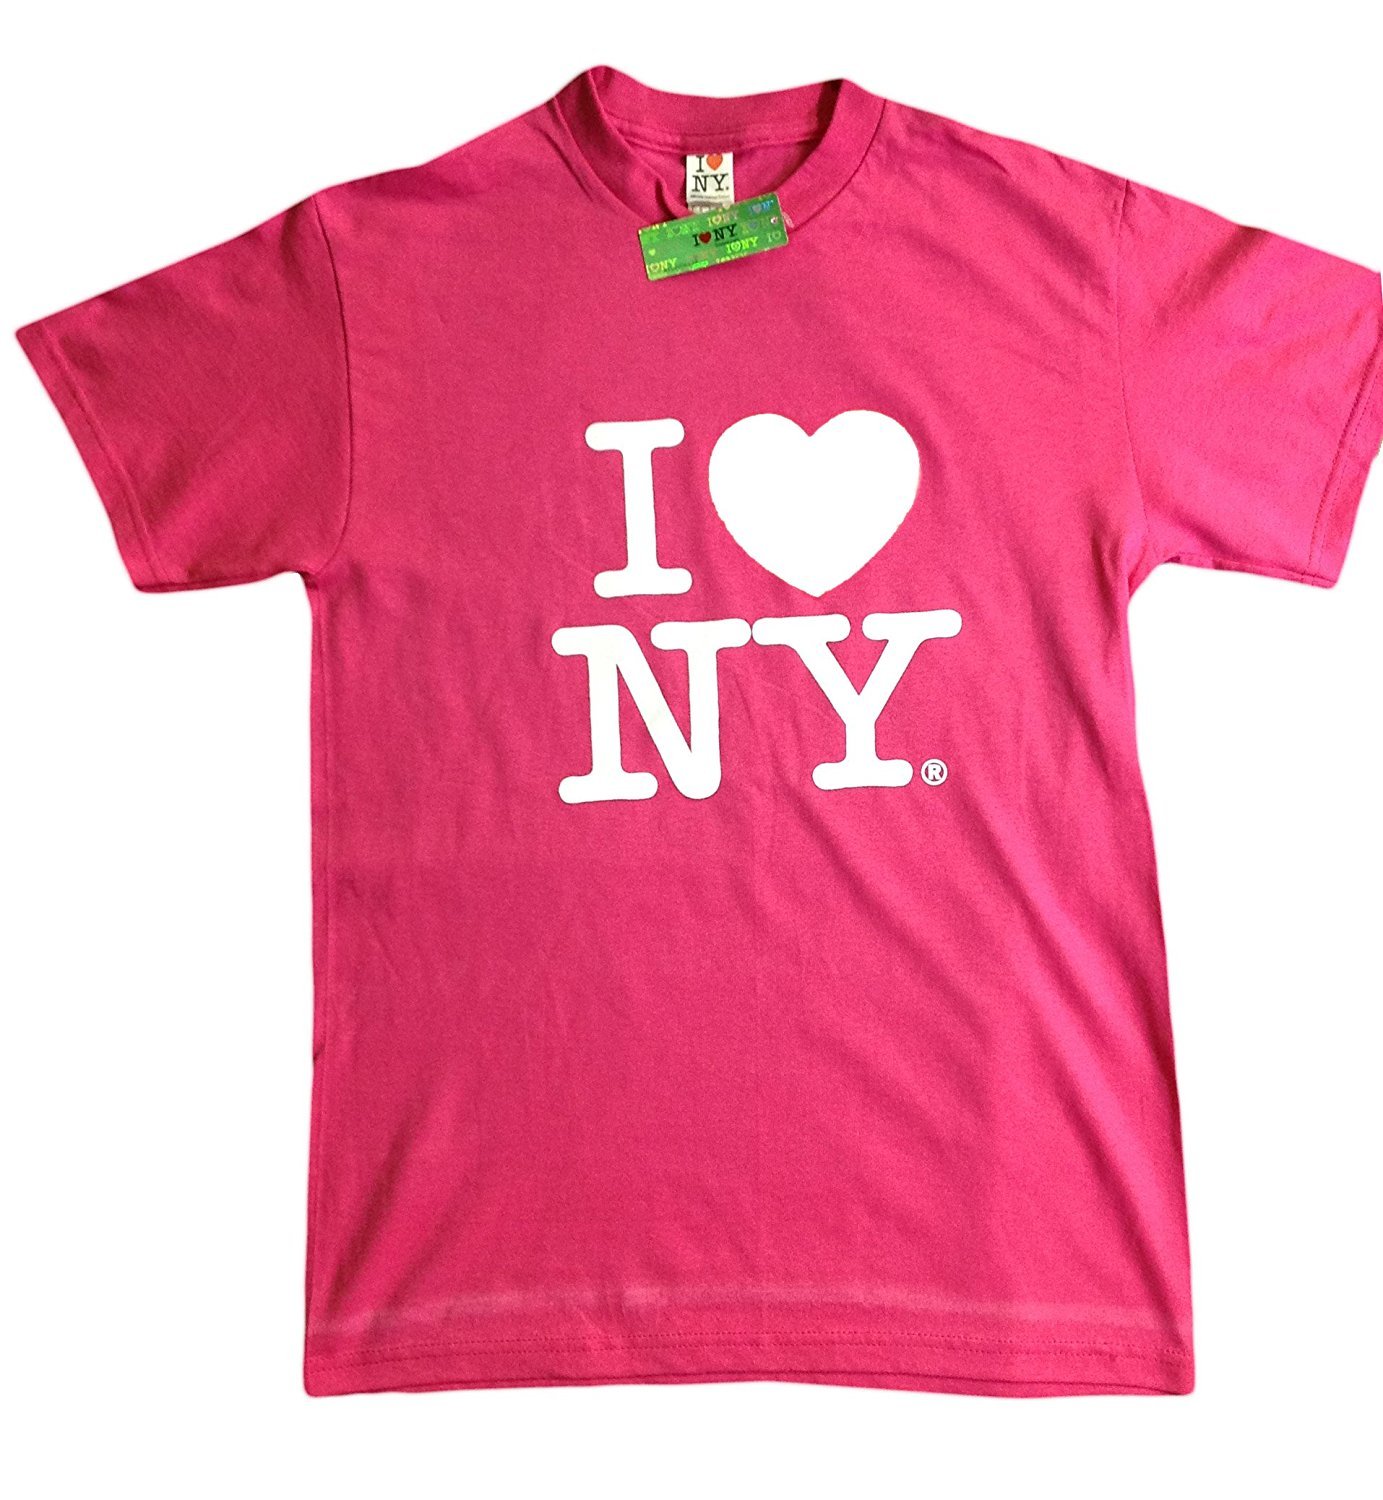 I Love NY New York Short Sleeve Screen Print Heart T-Shirt Hot Pink | eBay